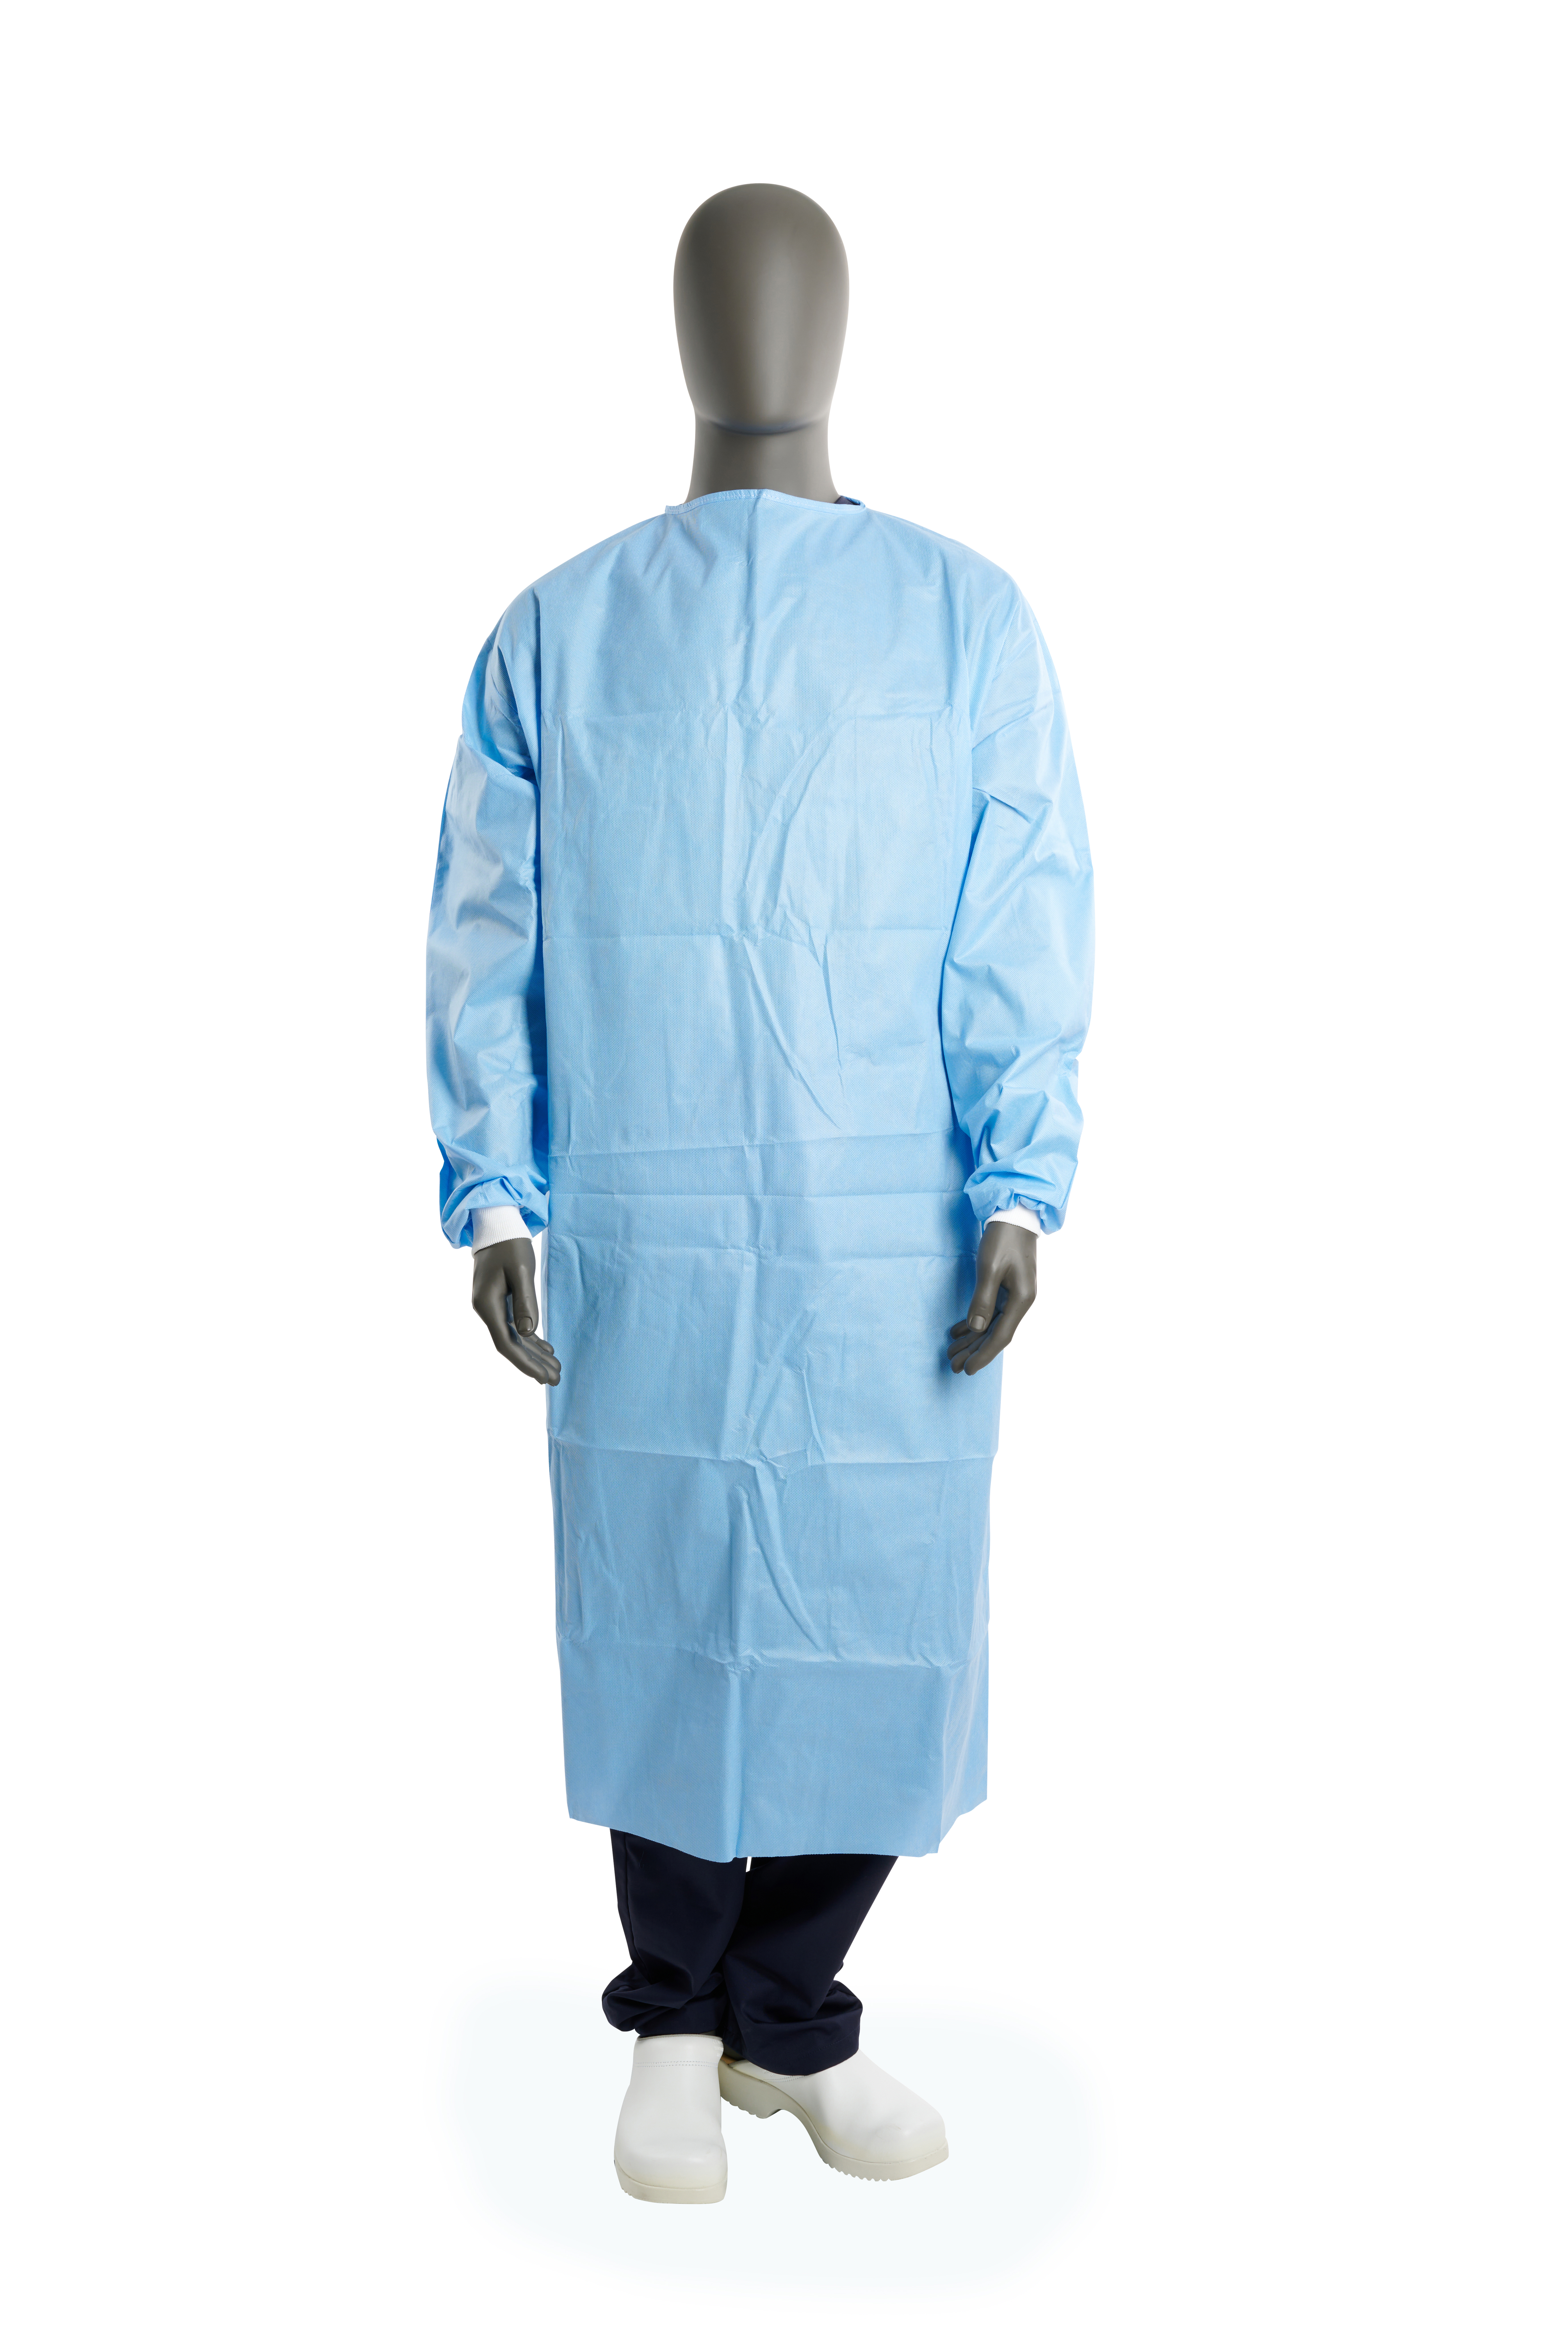 KRUTEX Premium Surgical Gown., blue, L=130 cm, L, 25/pk